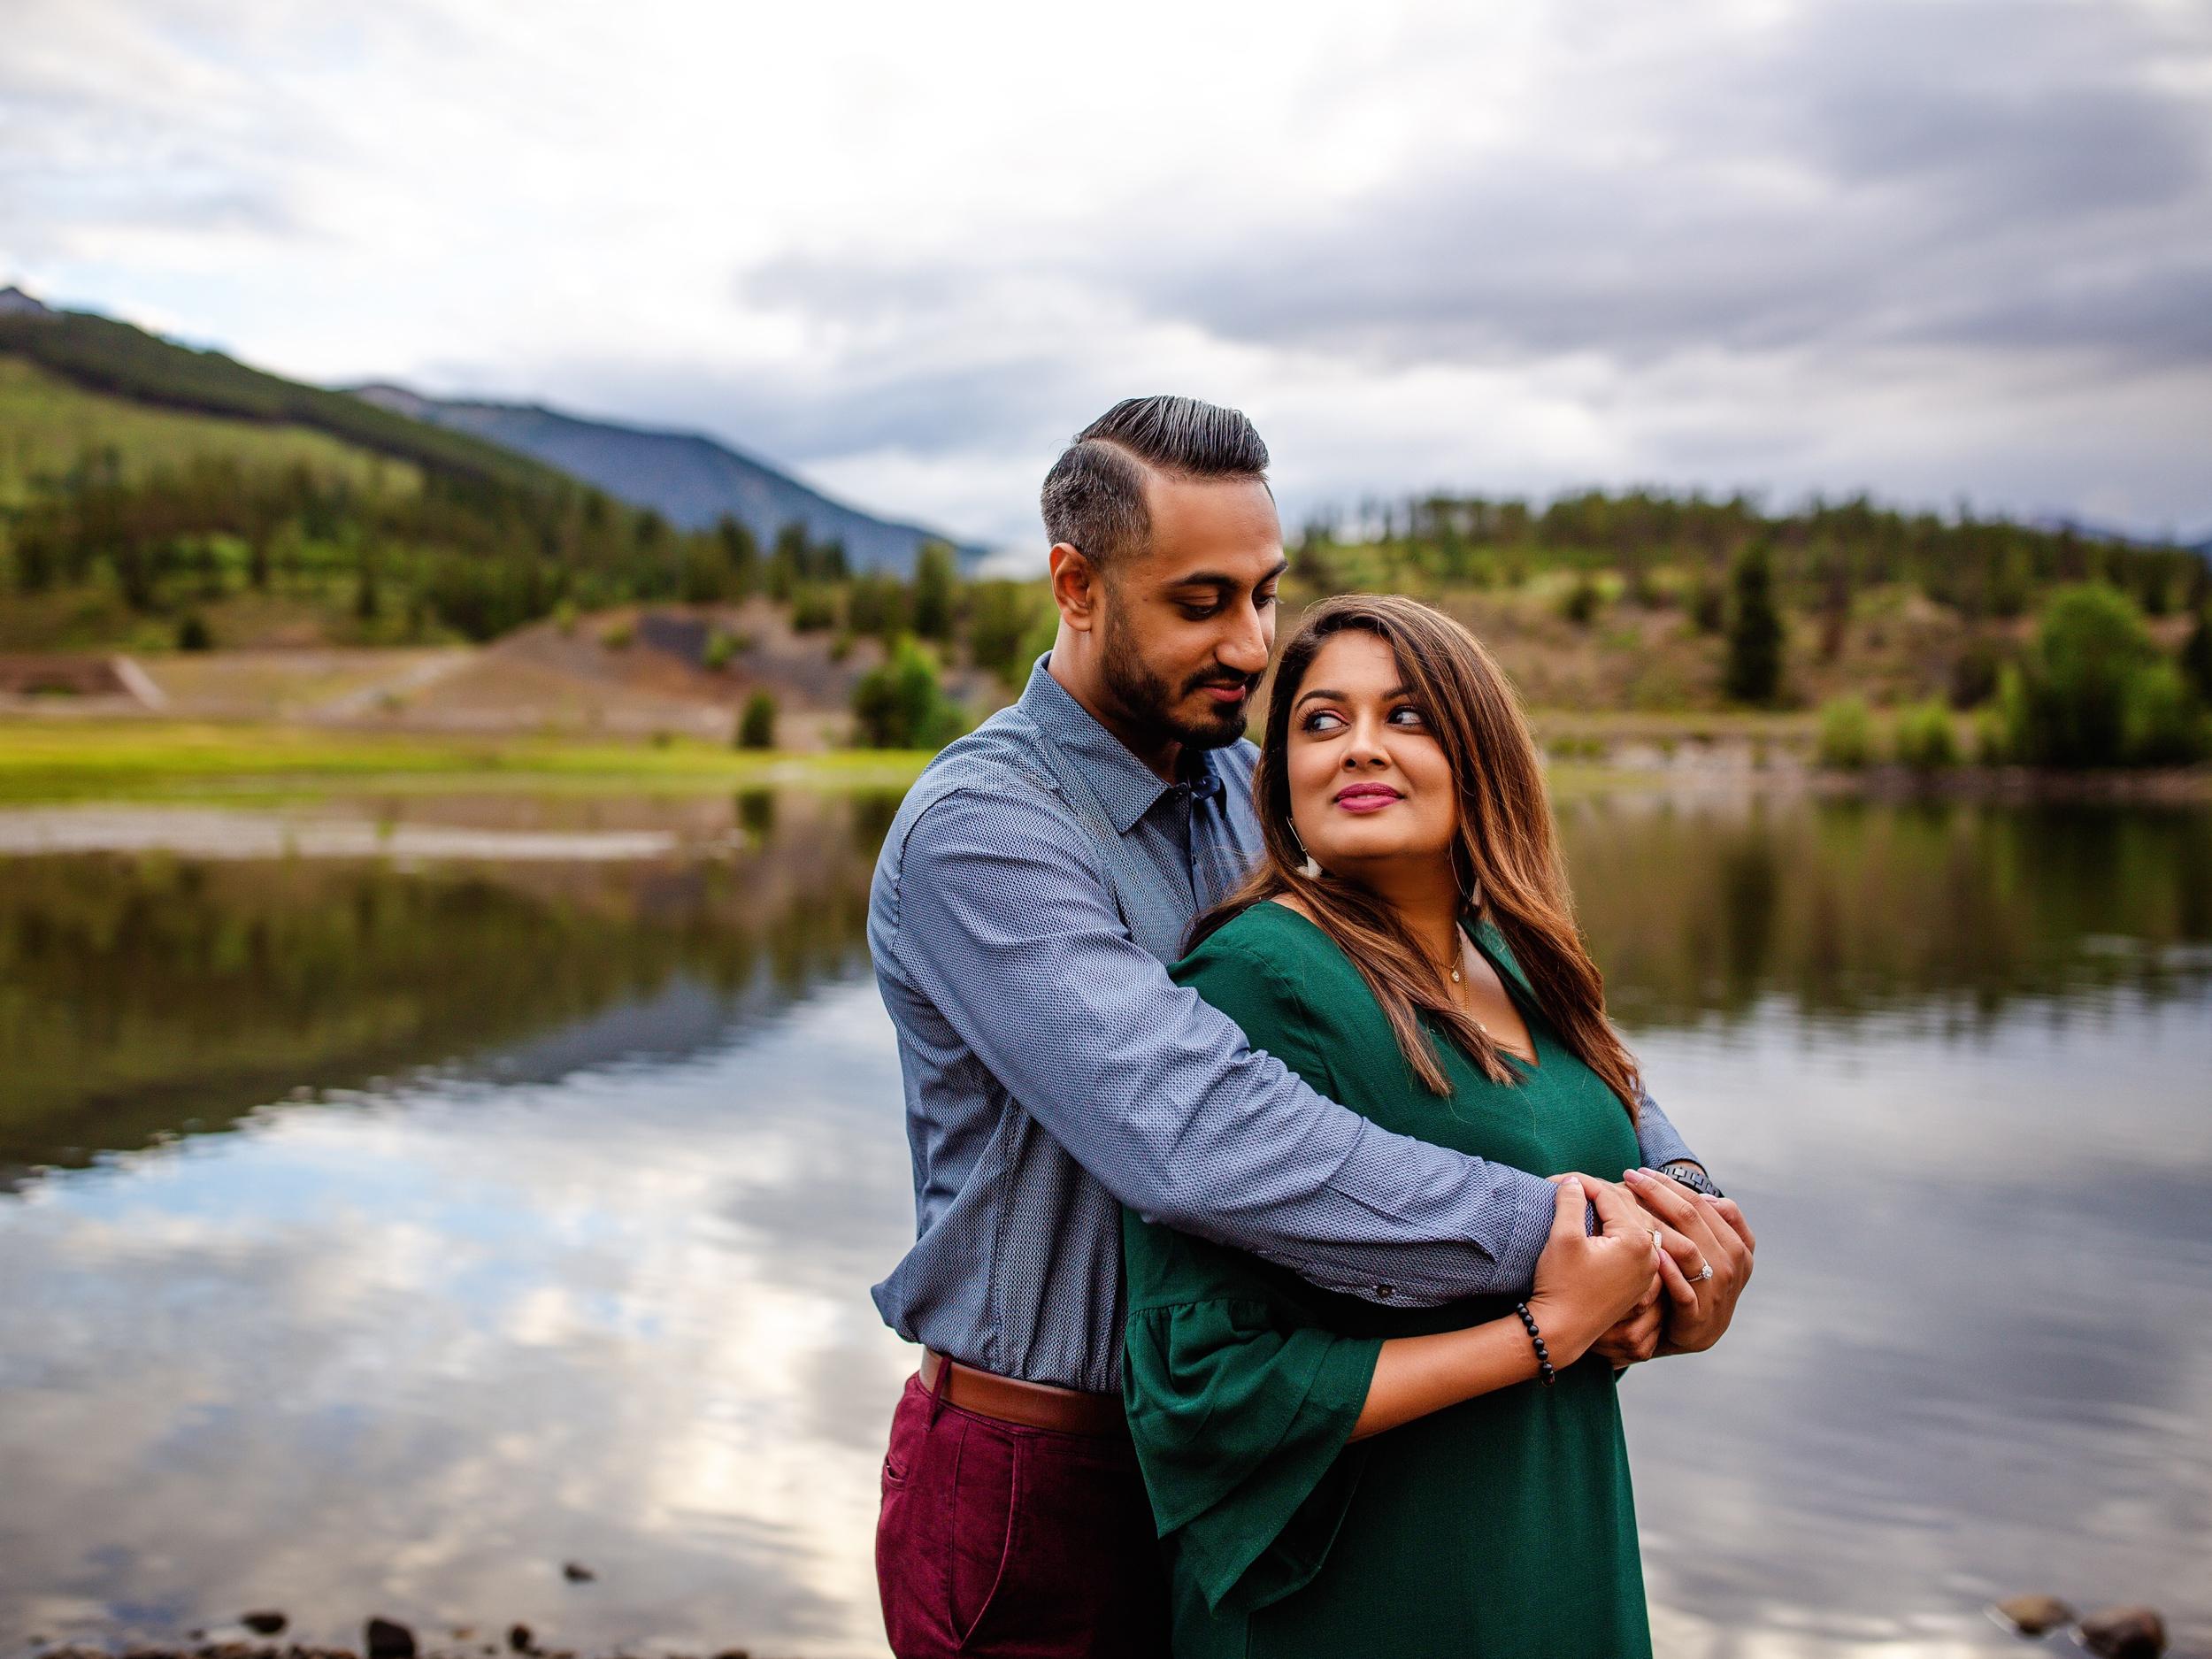 The Wedding Website of Nikita Patel and Milan Patel